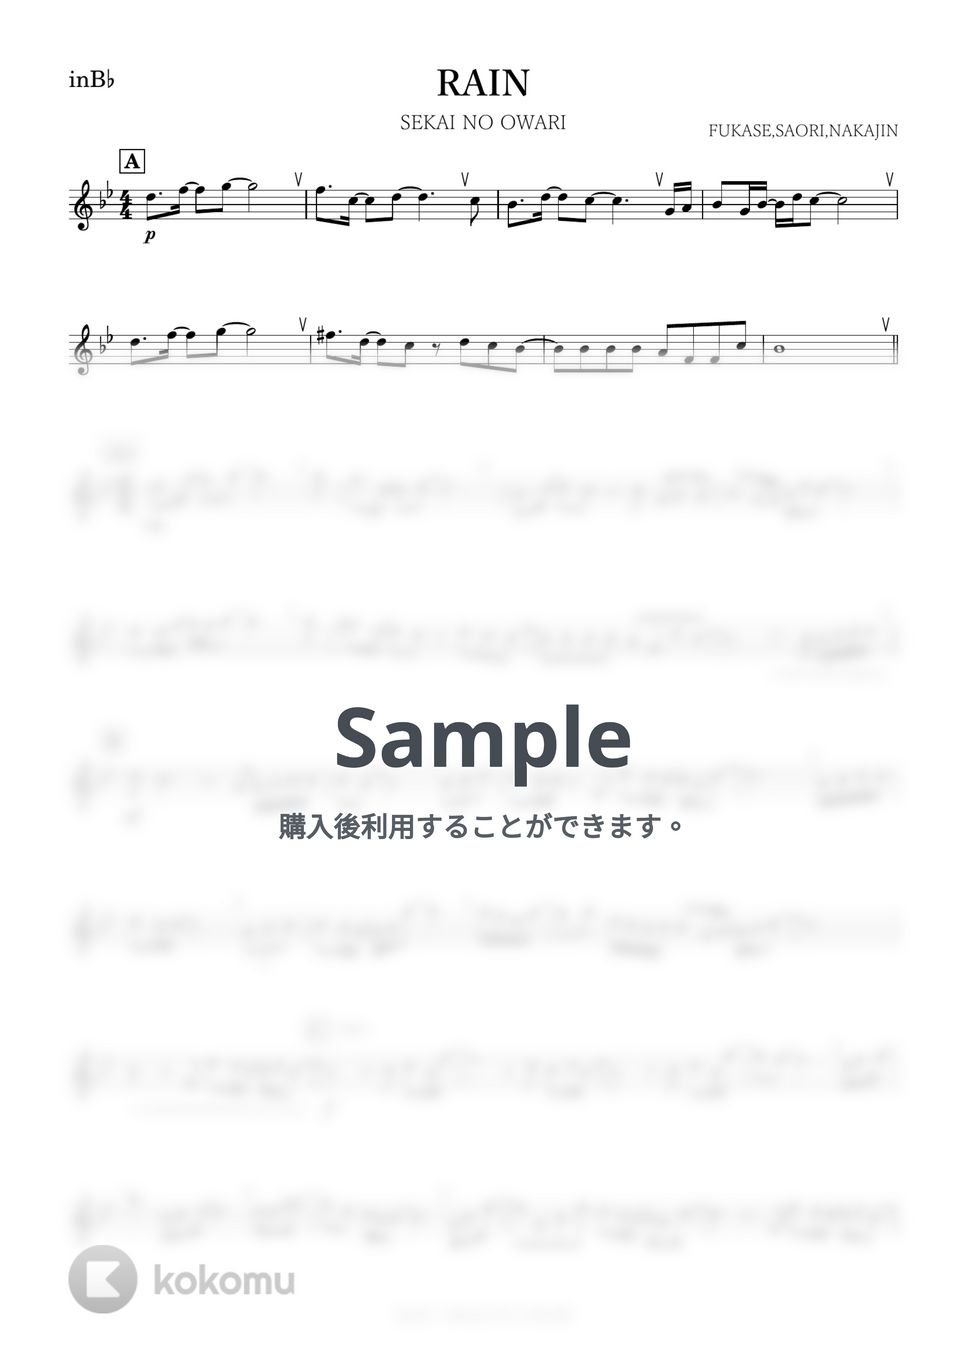 SEKAI NO OWARI - RAIN (B♭) by kanamusic